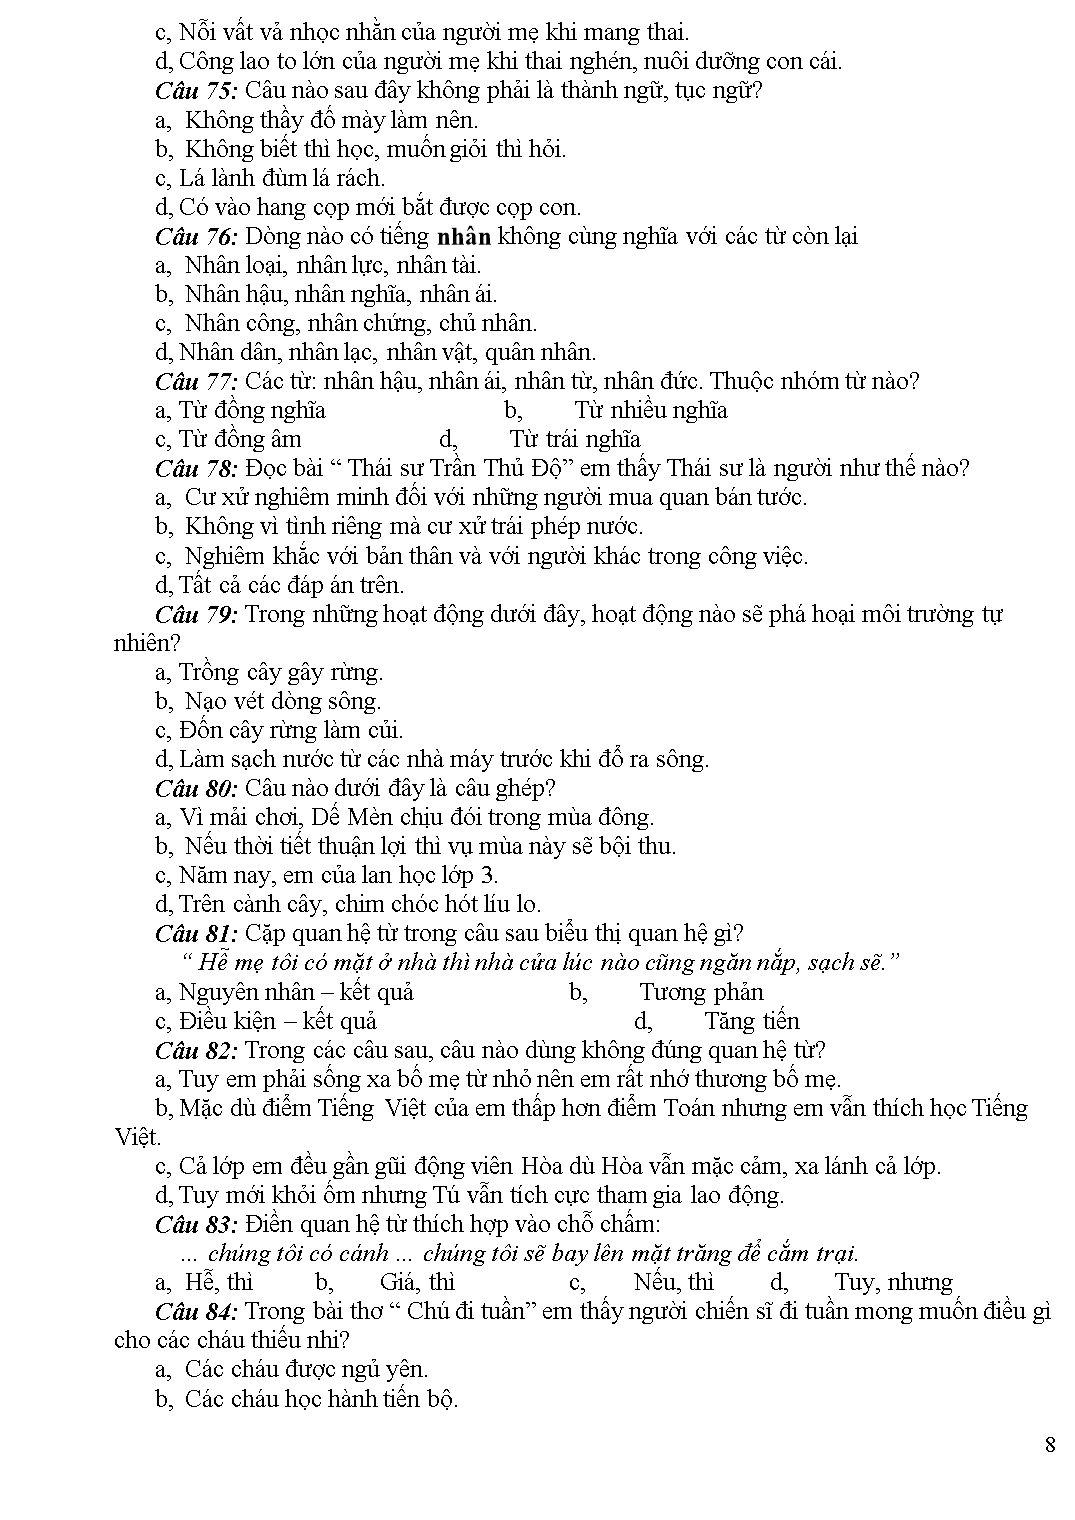 100 câu trắc nghiệm môn Tiếng Việt 5 trang 8